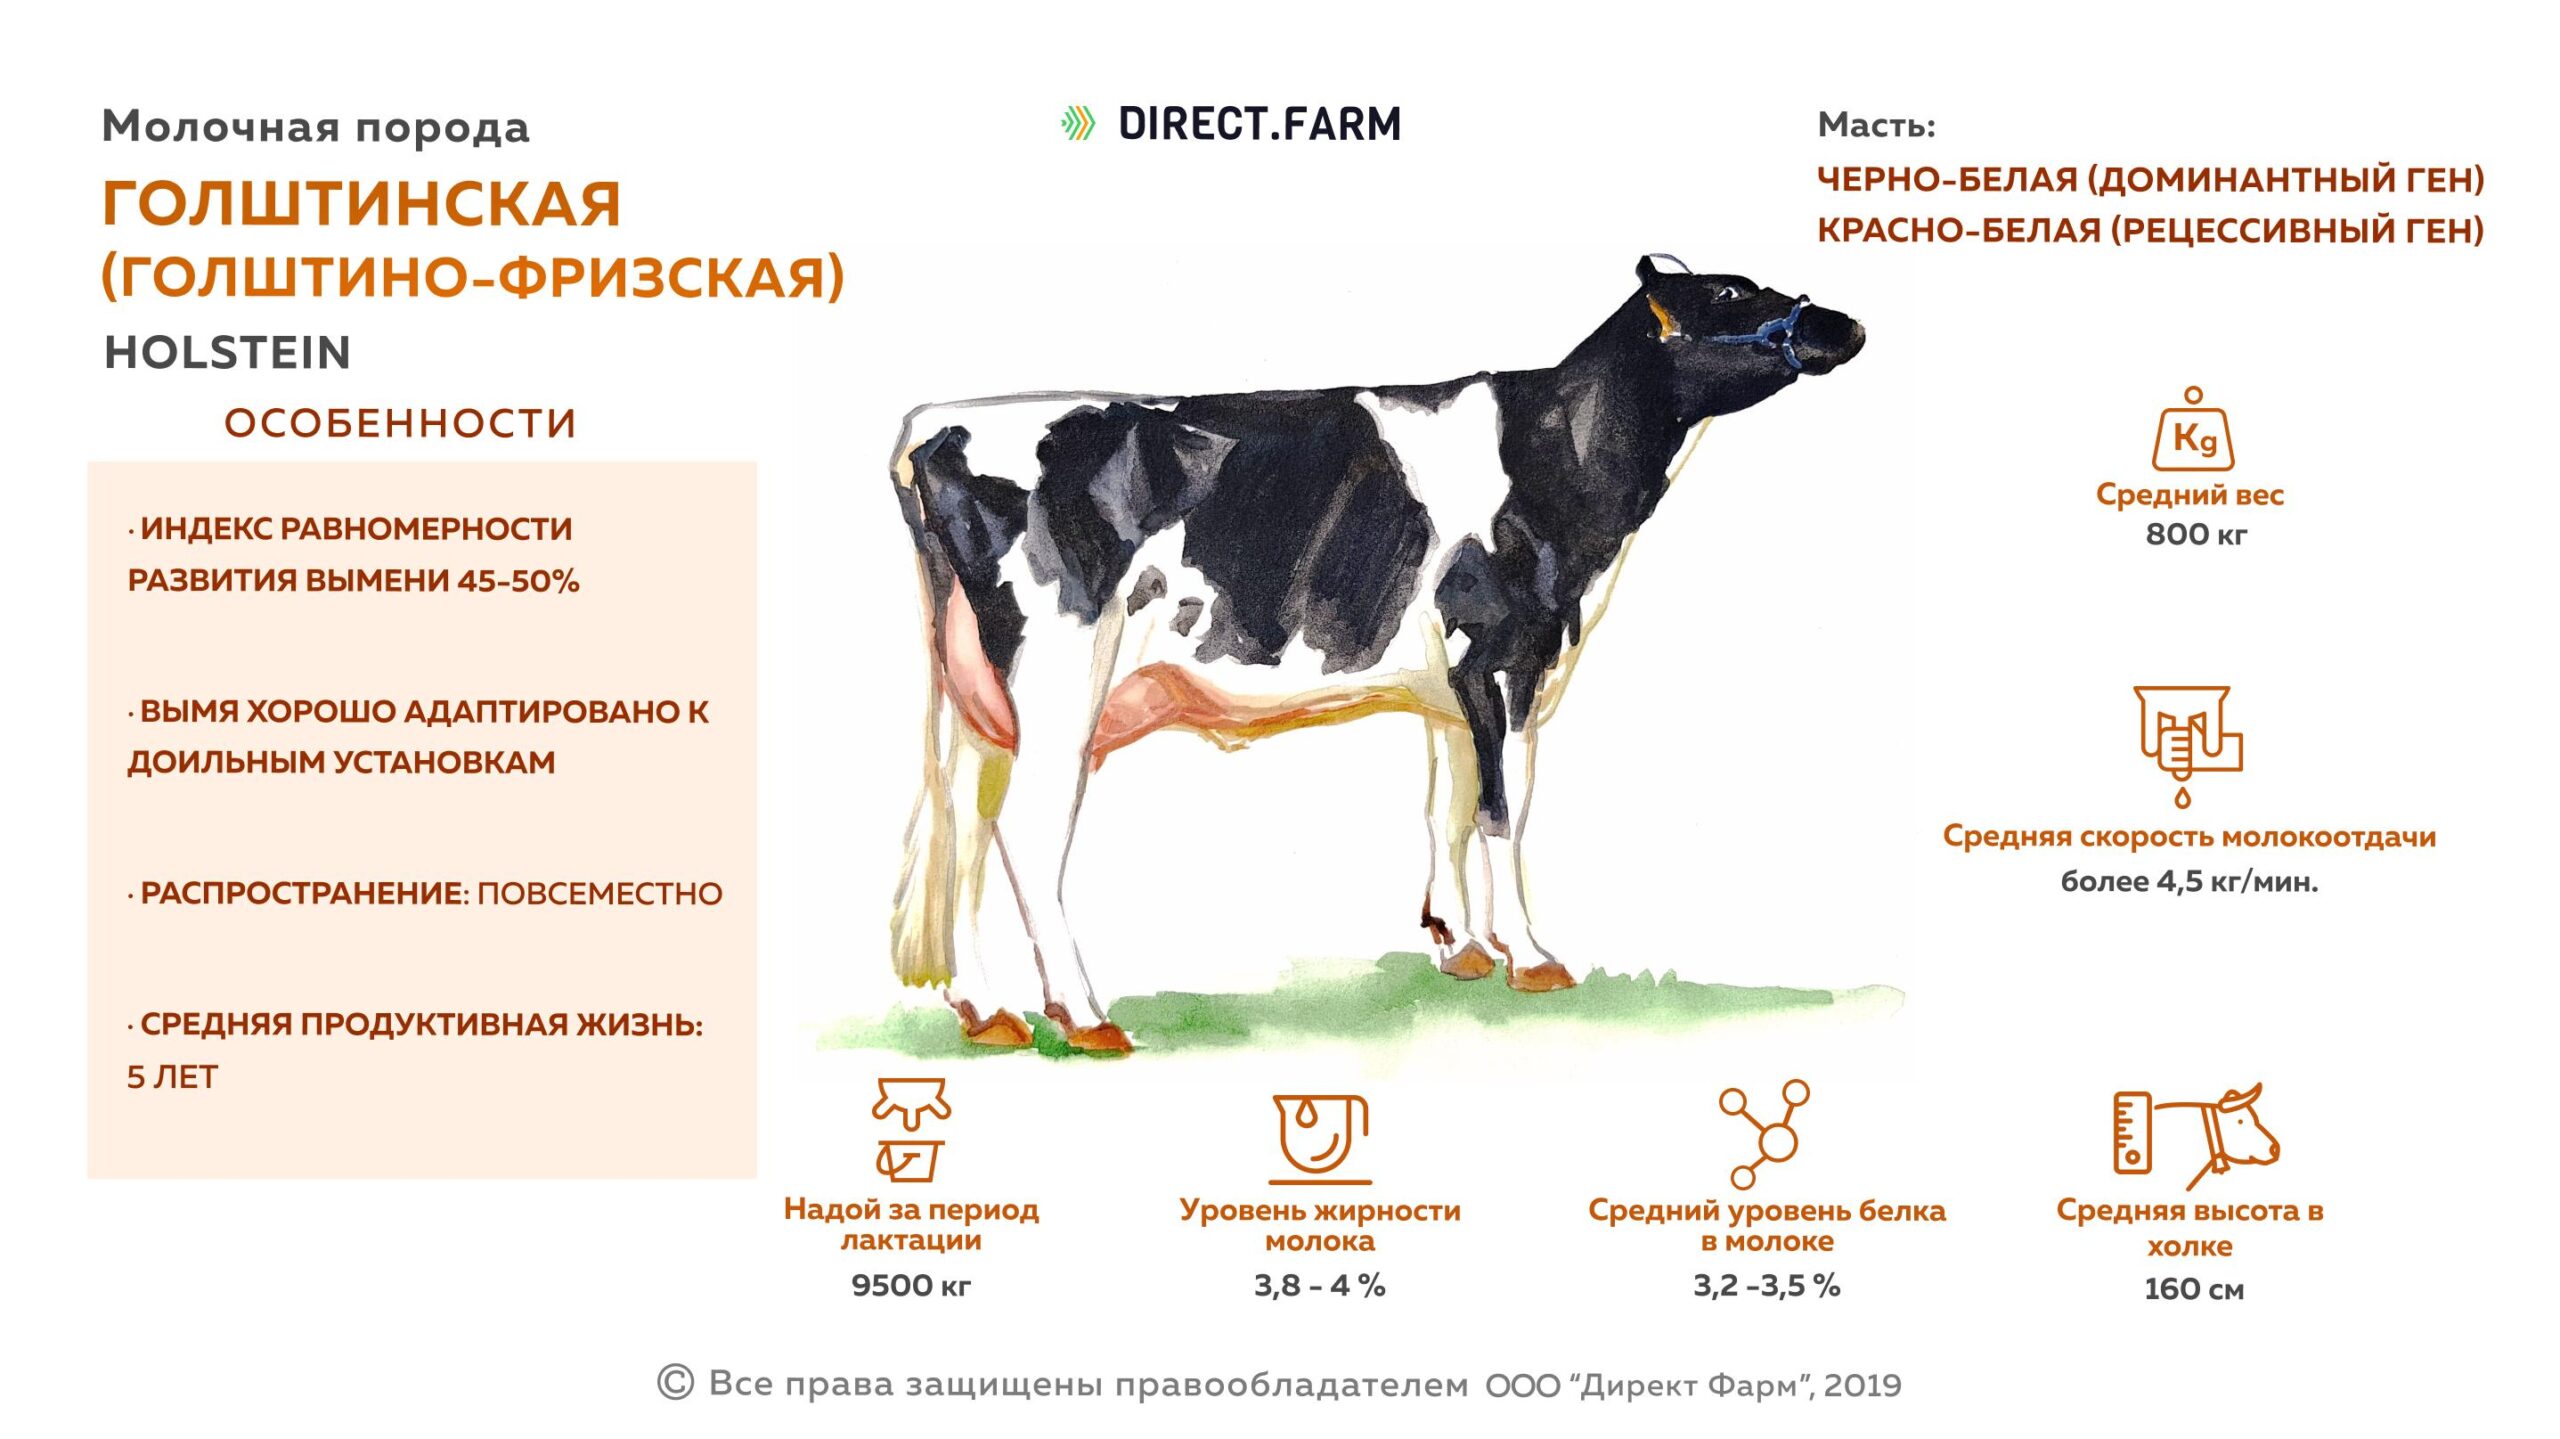 Подольский крупный рогатый скот: характеристики, использование и информация о полной породе